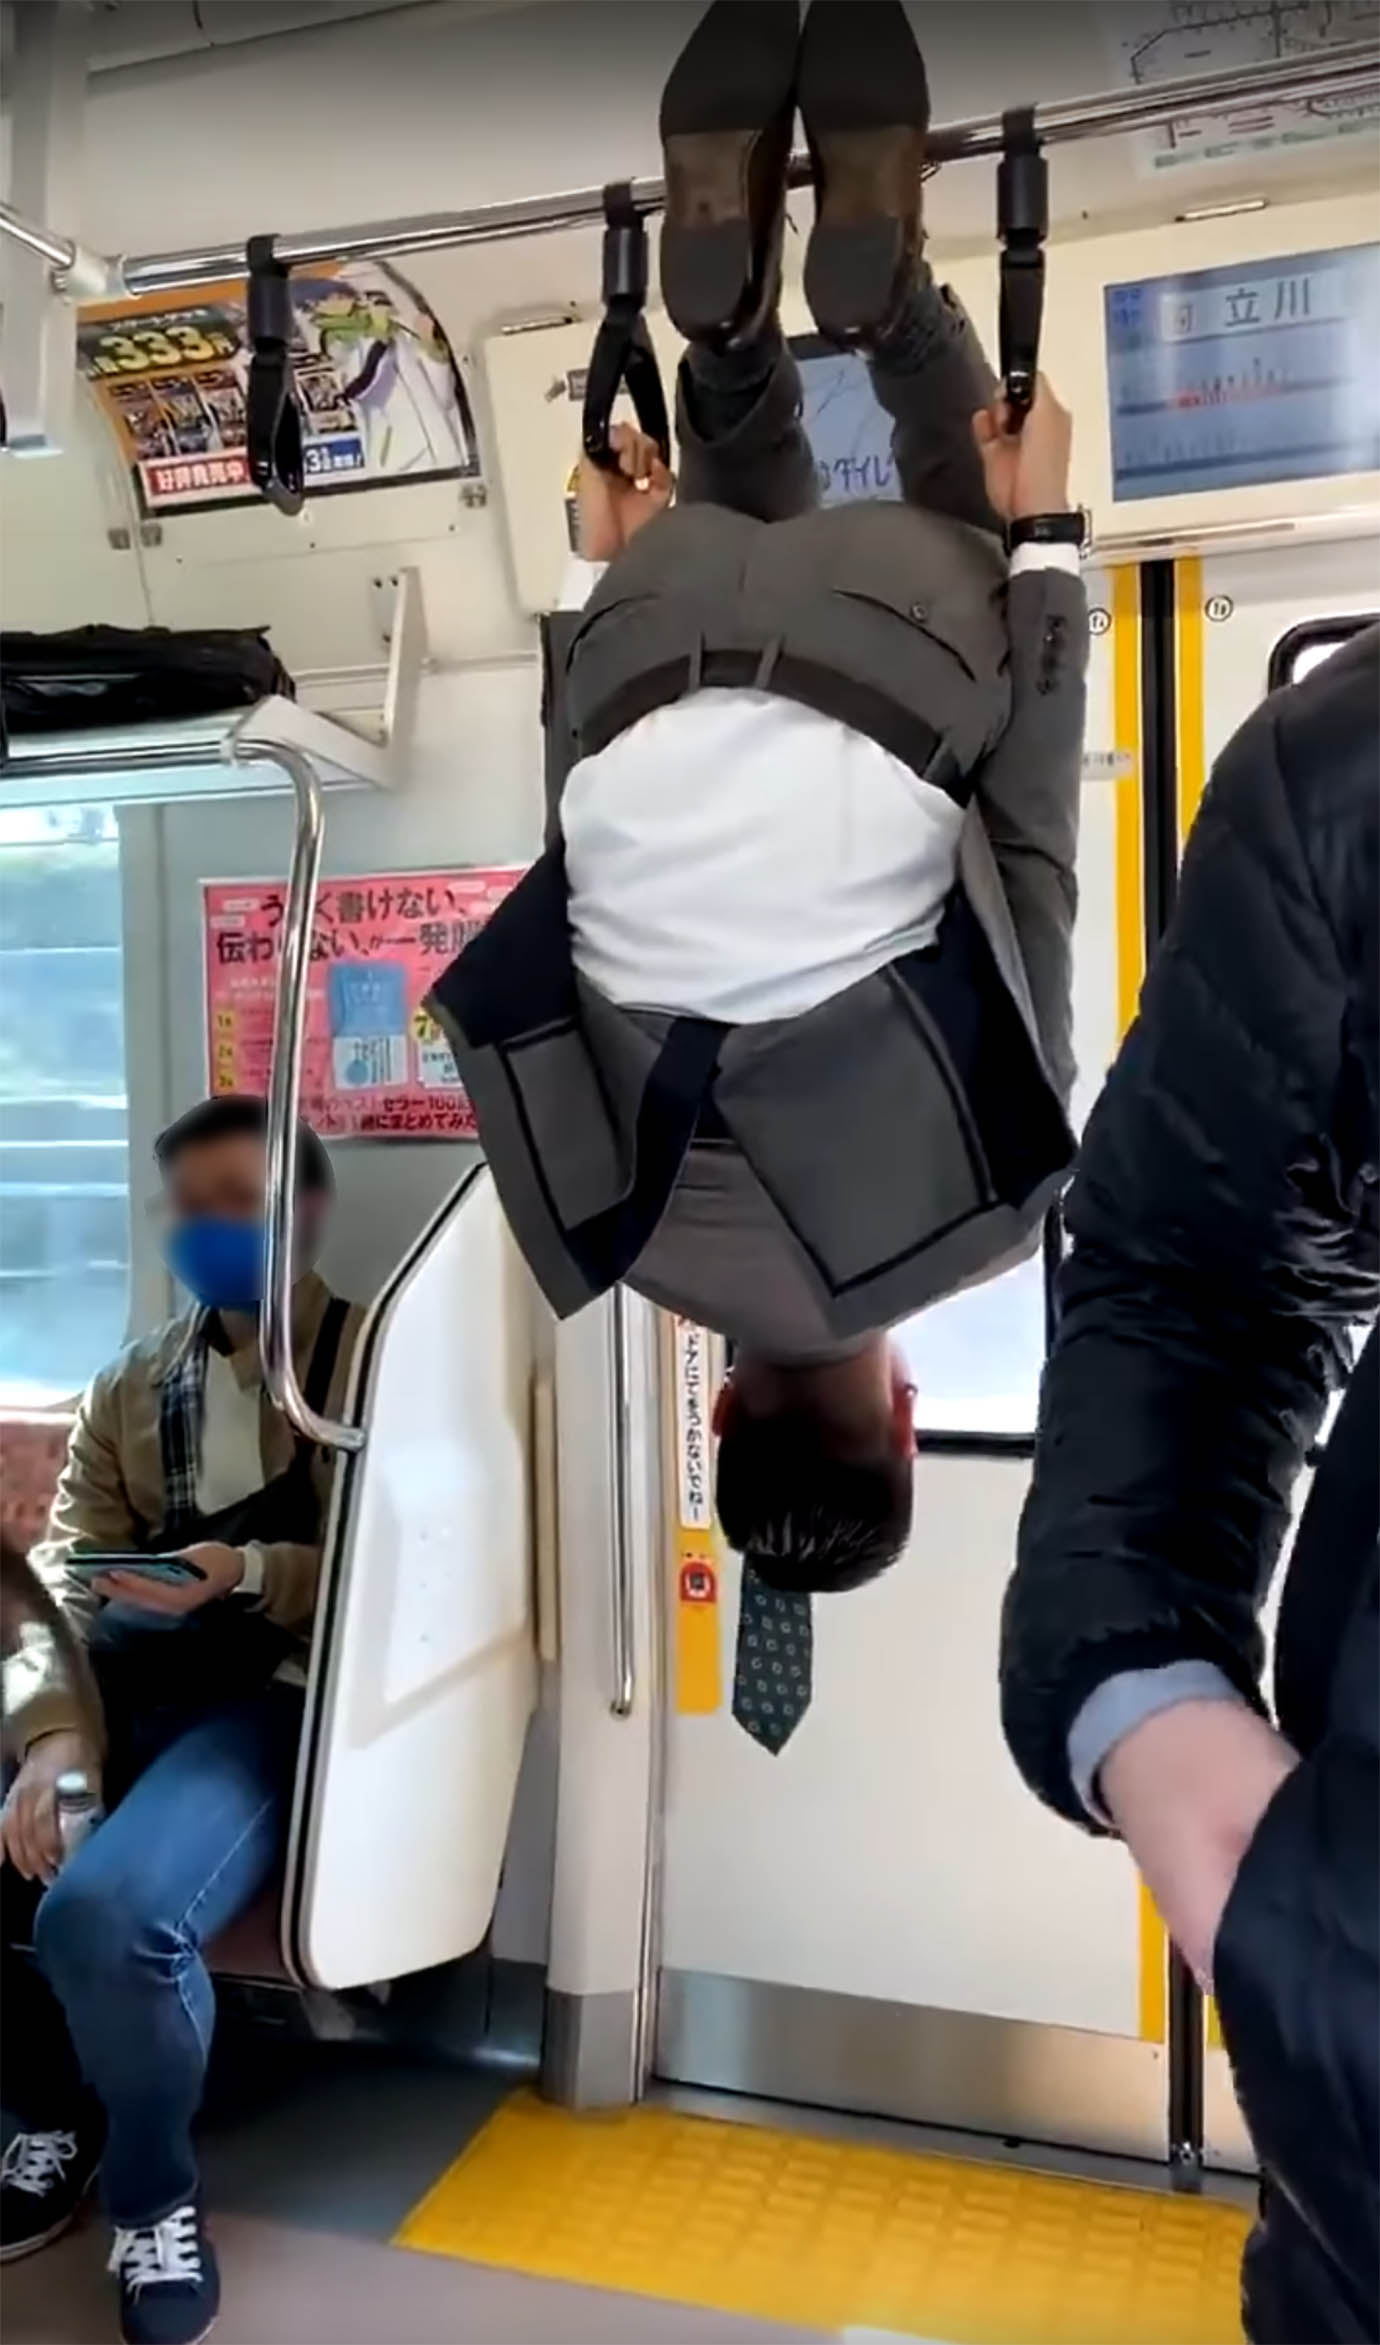 【衝撃動画】電車内でぶら下がるサラリーマンが激写される / 人生に疲れてメンタル崩壊か